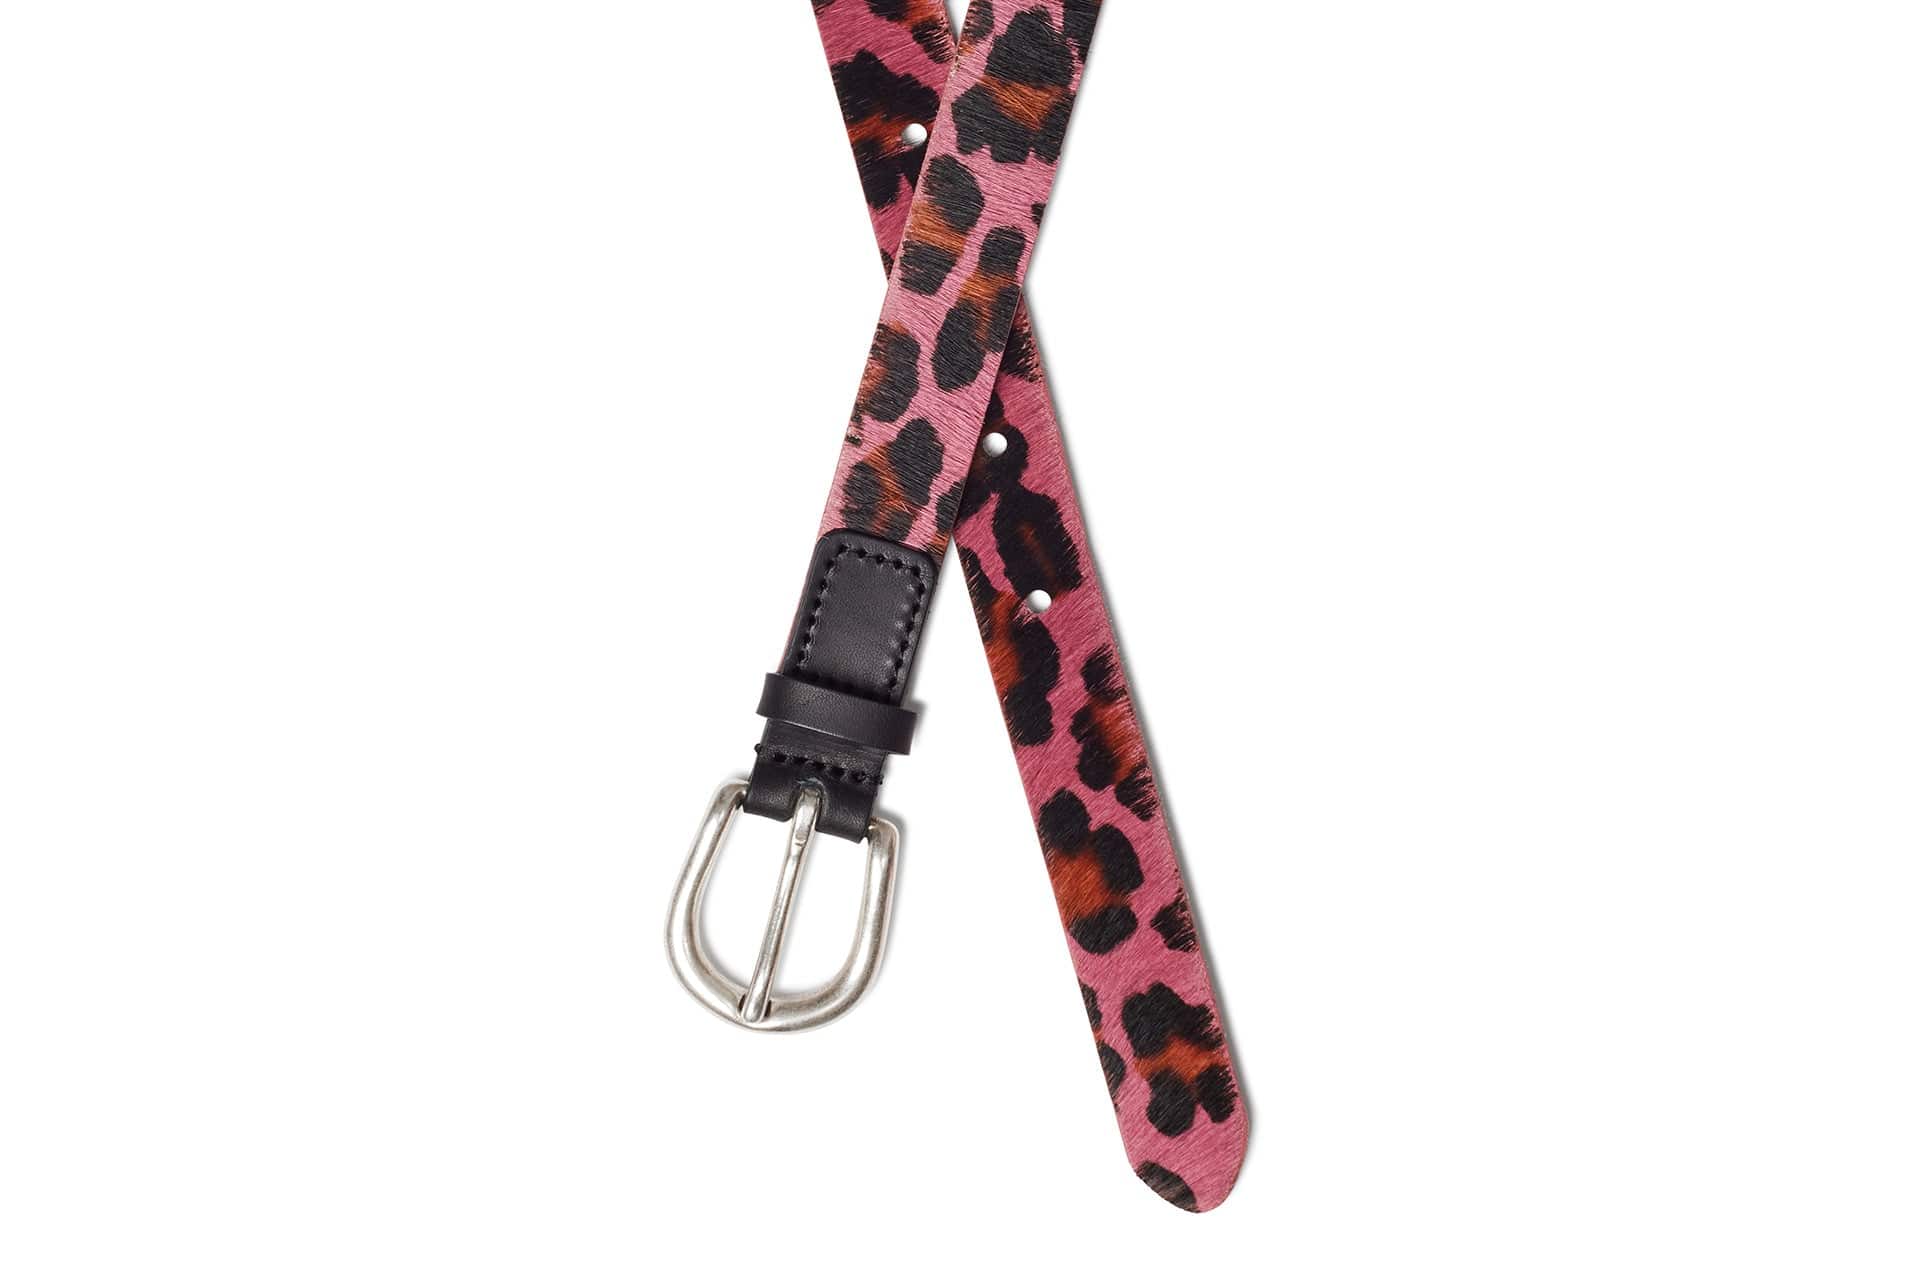 Women's Golf Belt | Foxtrot Pink Leopard | Royal Albartross Foxtrot Pink Leopard